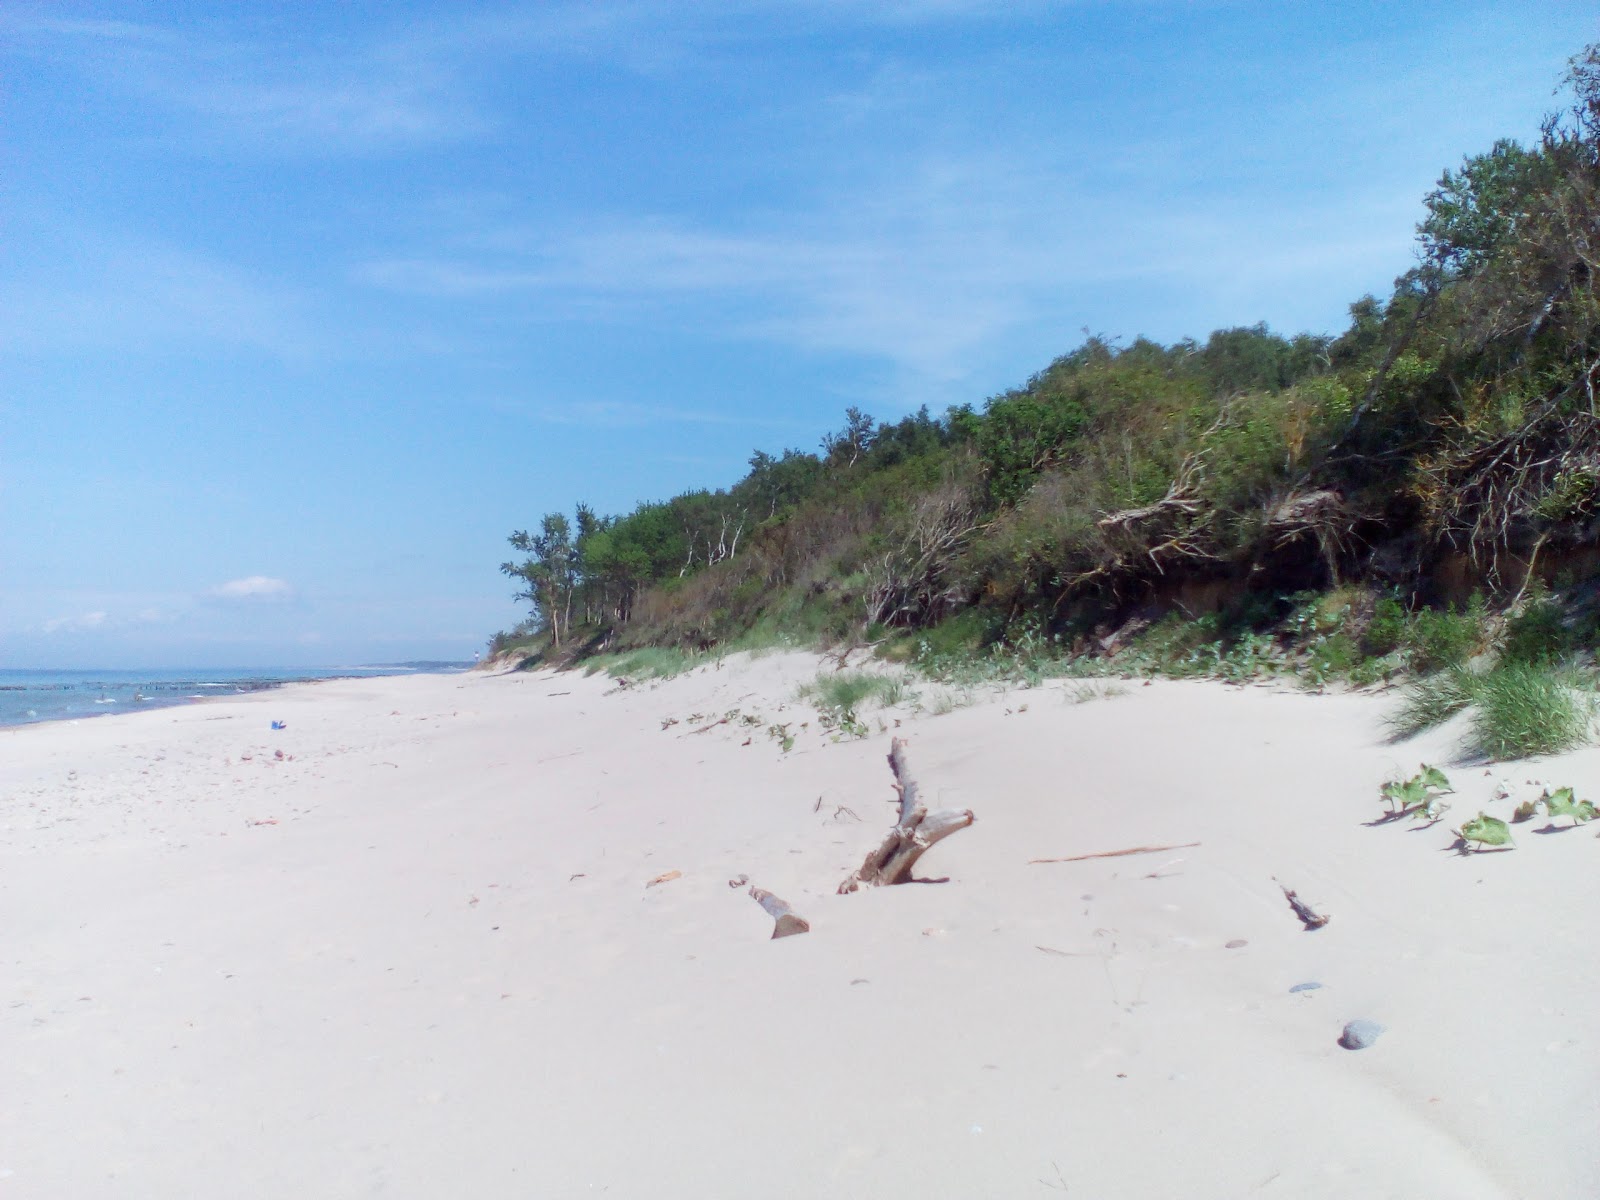 Foto de Lestniza k moryu com areia brilhante superfície